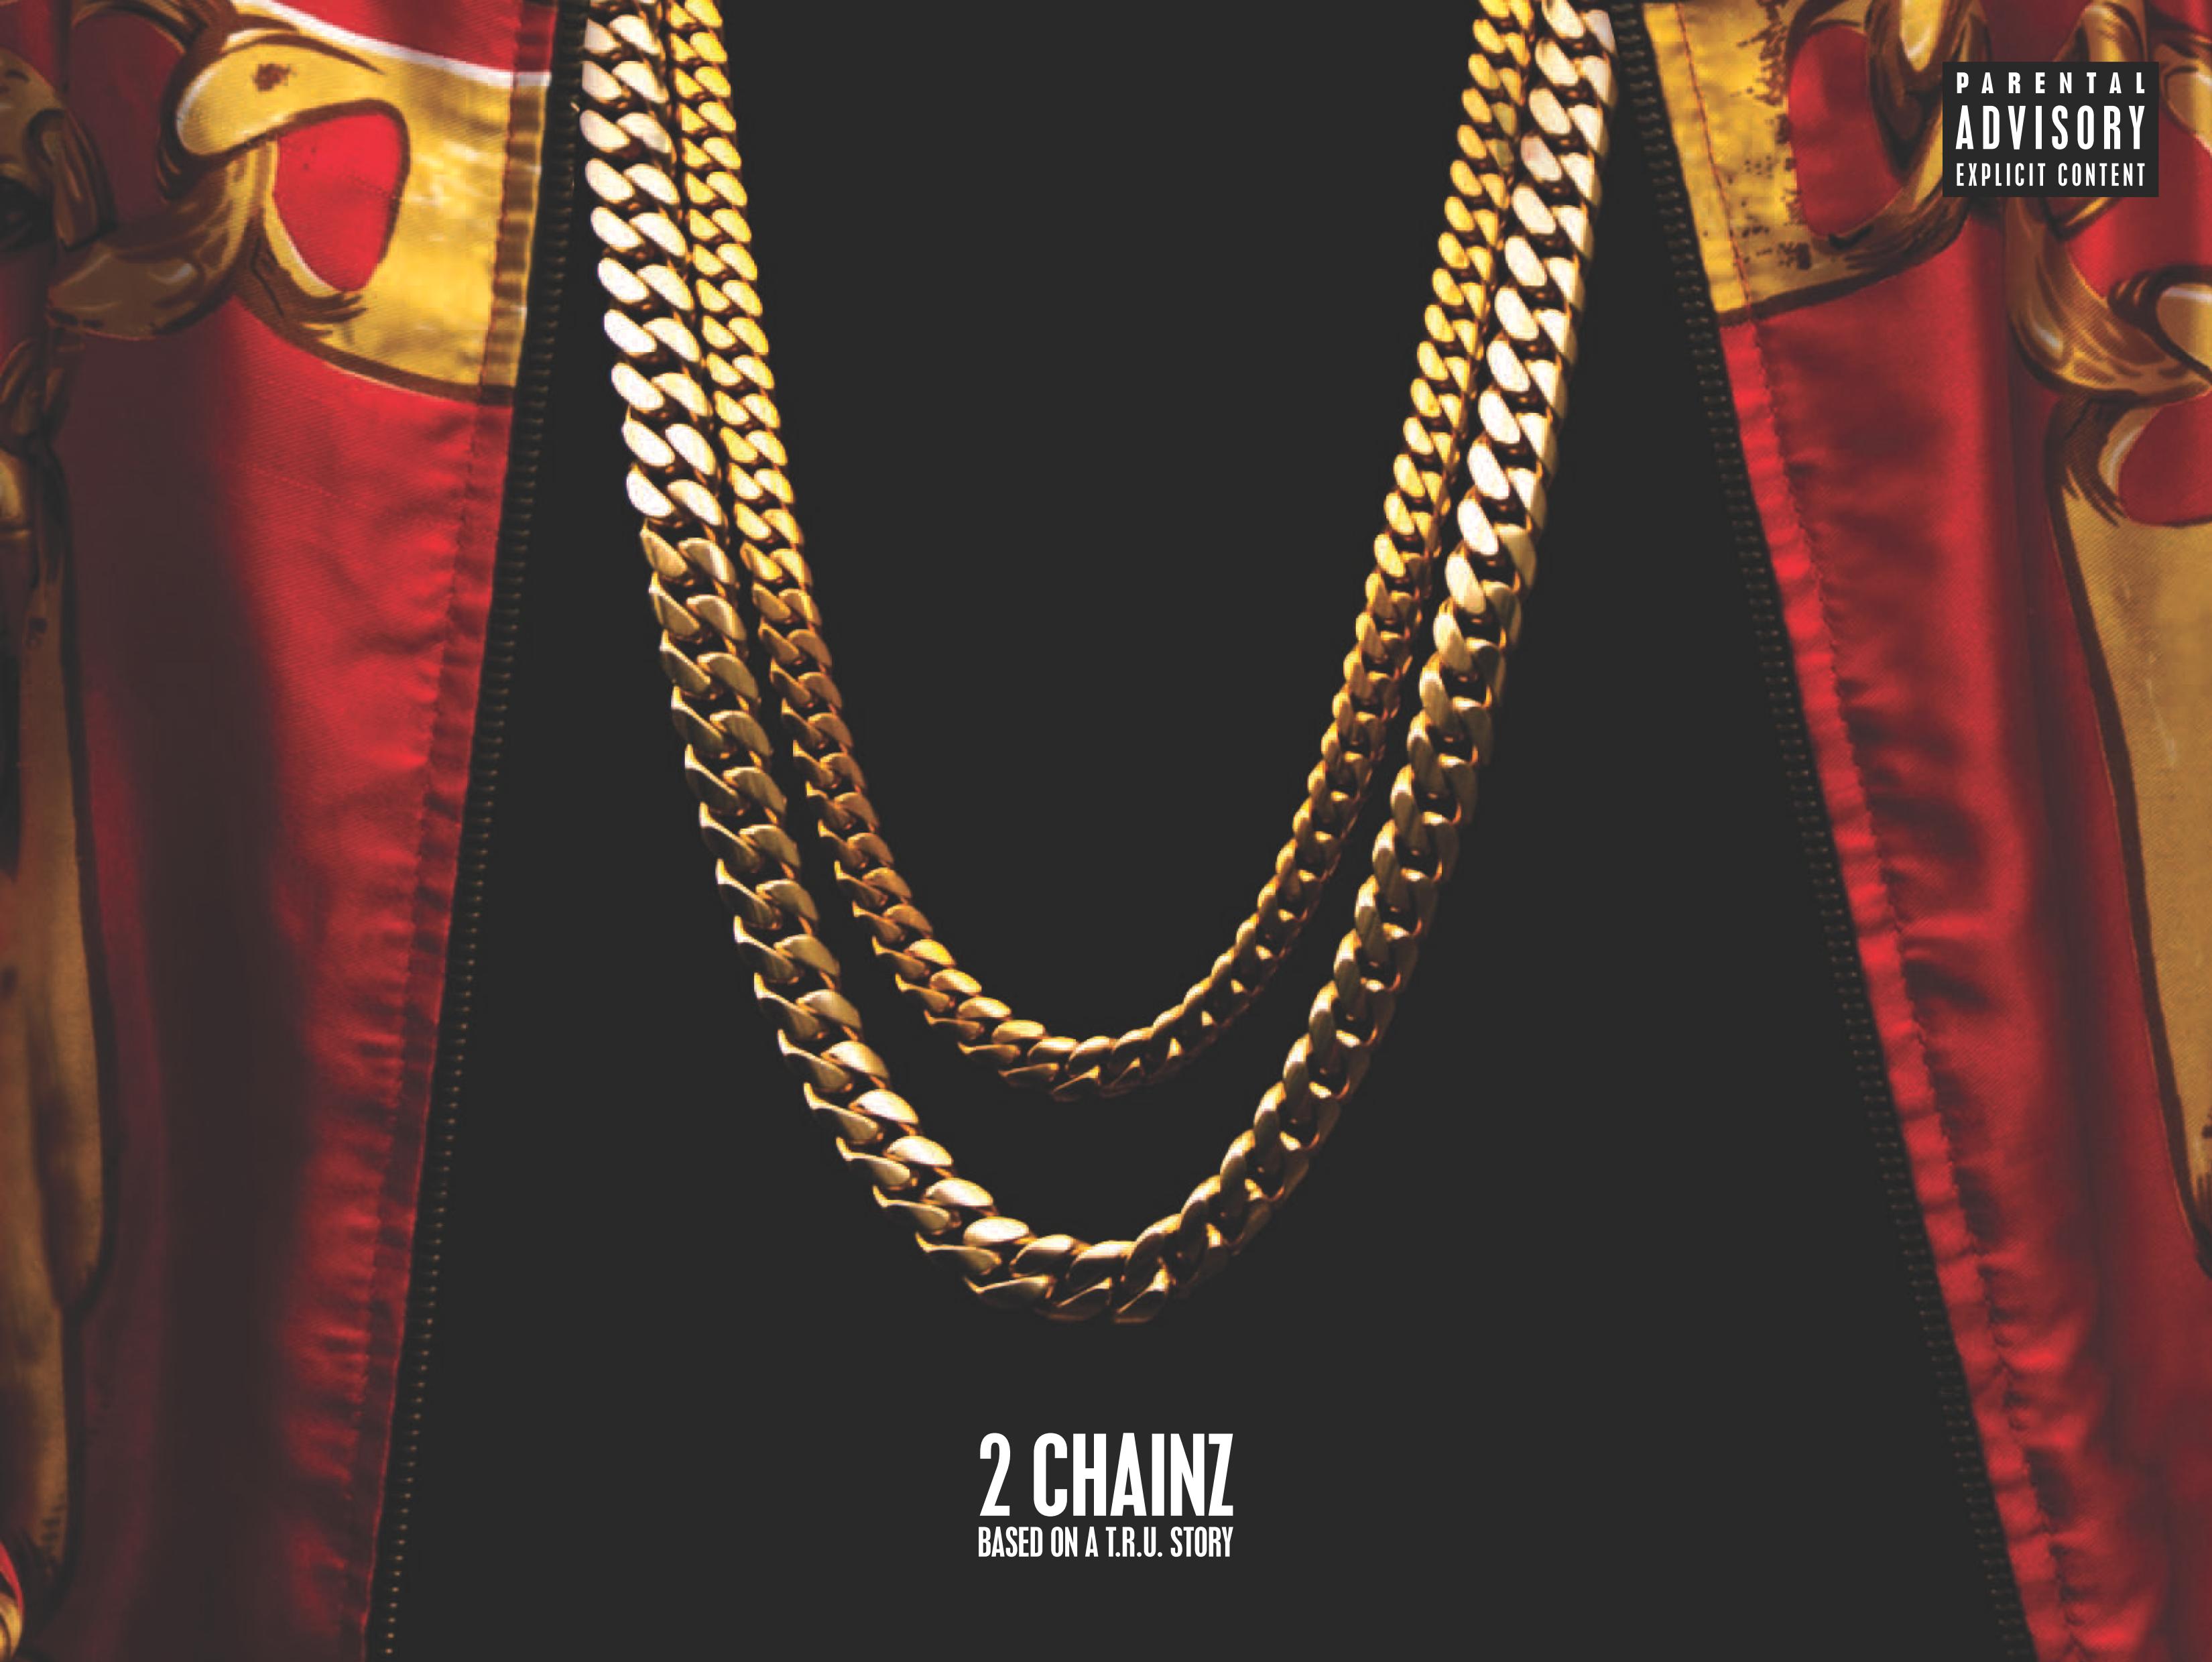 2 chainz album download zip free